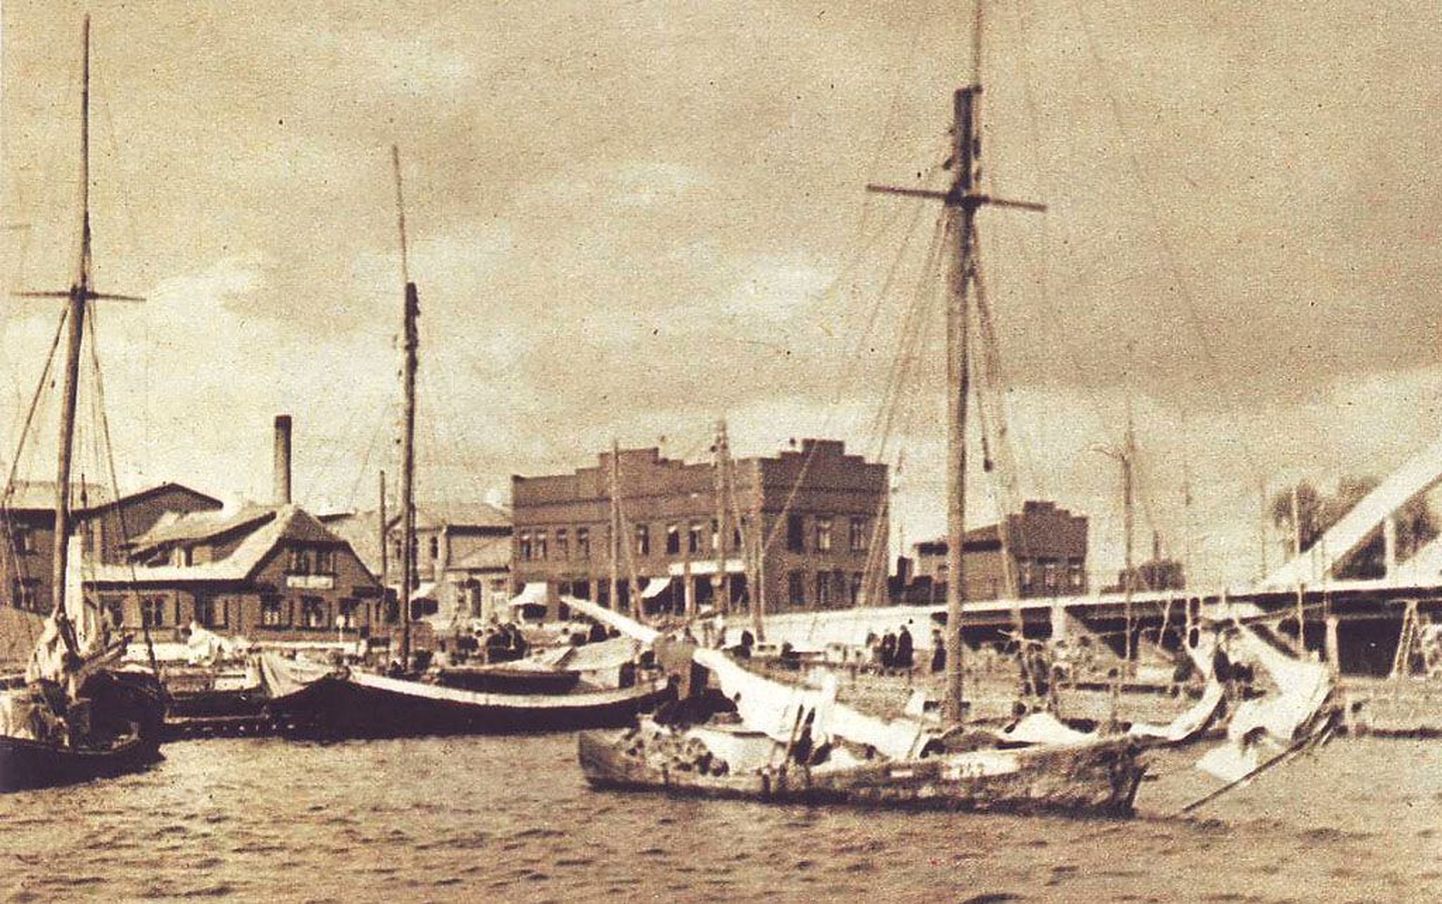 Kihnu kivilaevastik Pärnu sadamas 1938. aastal, mil linnas käisid ulatuslikud ehitustööd.